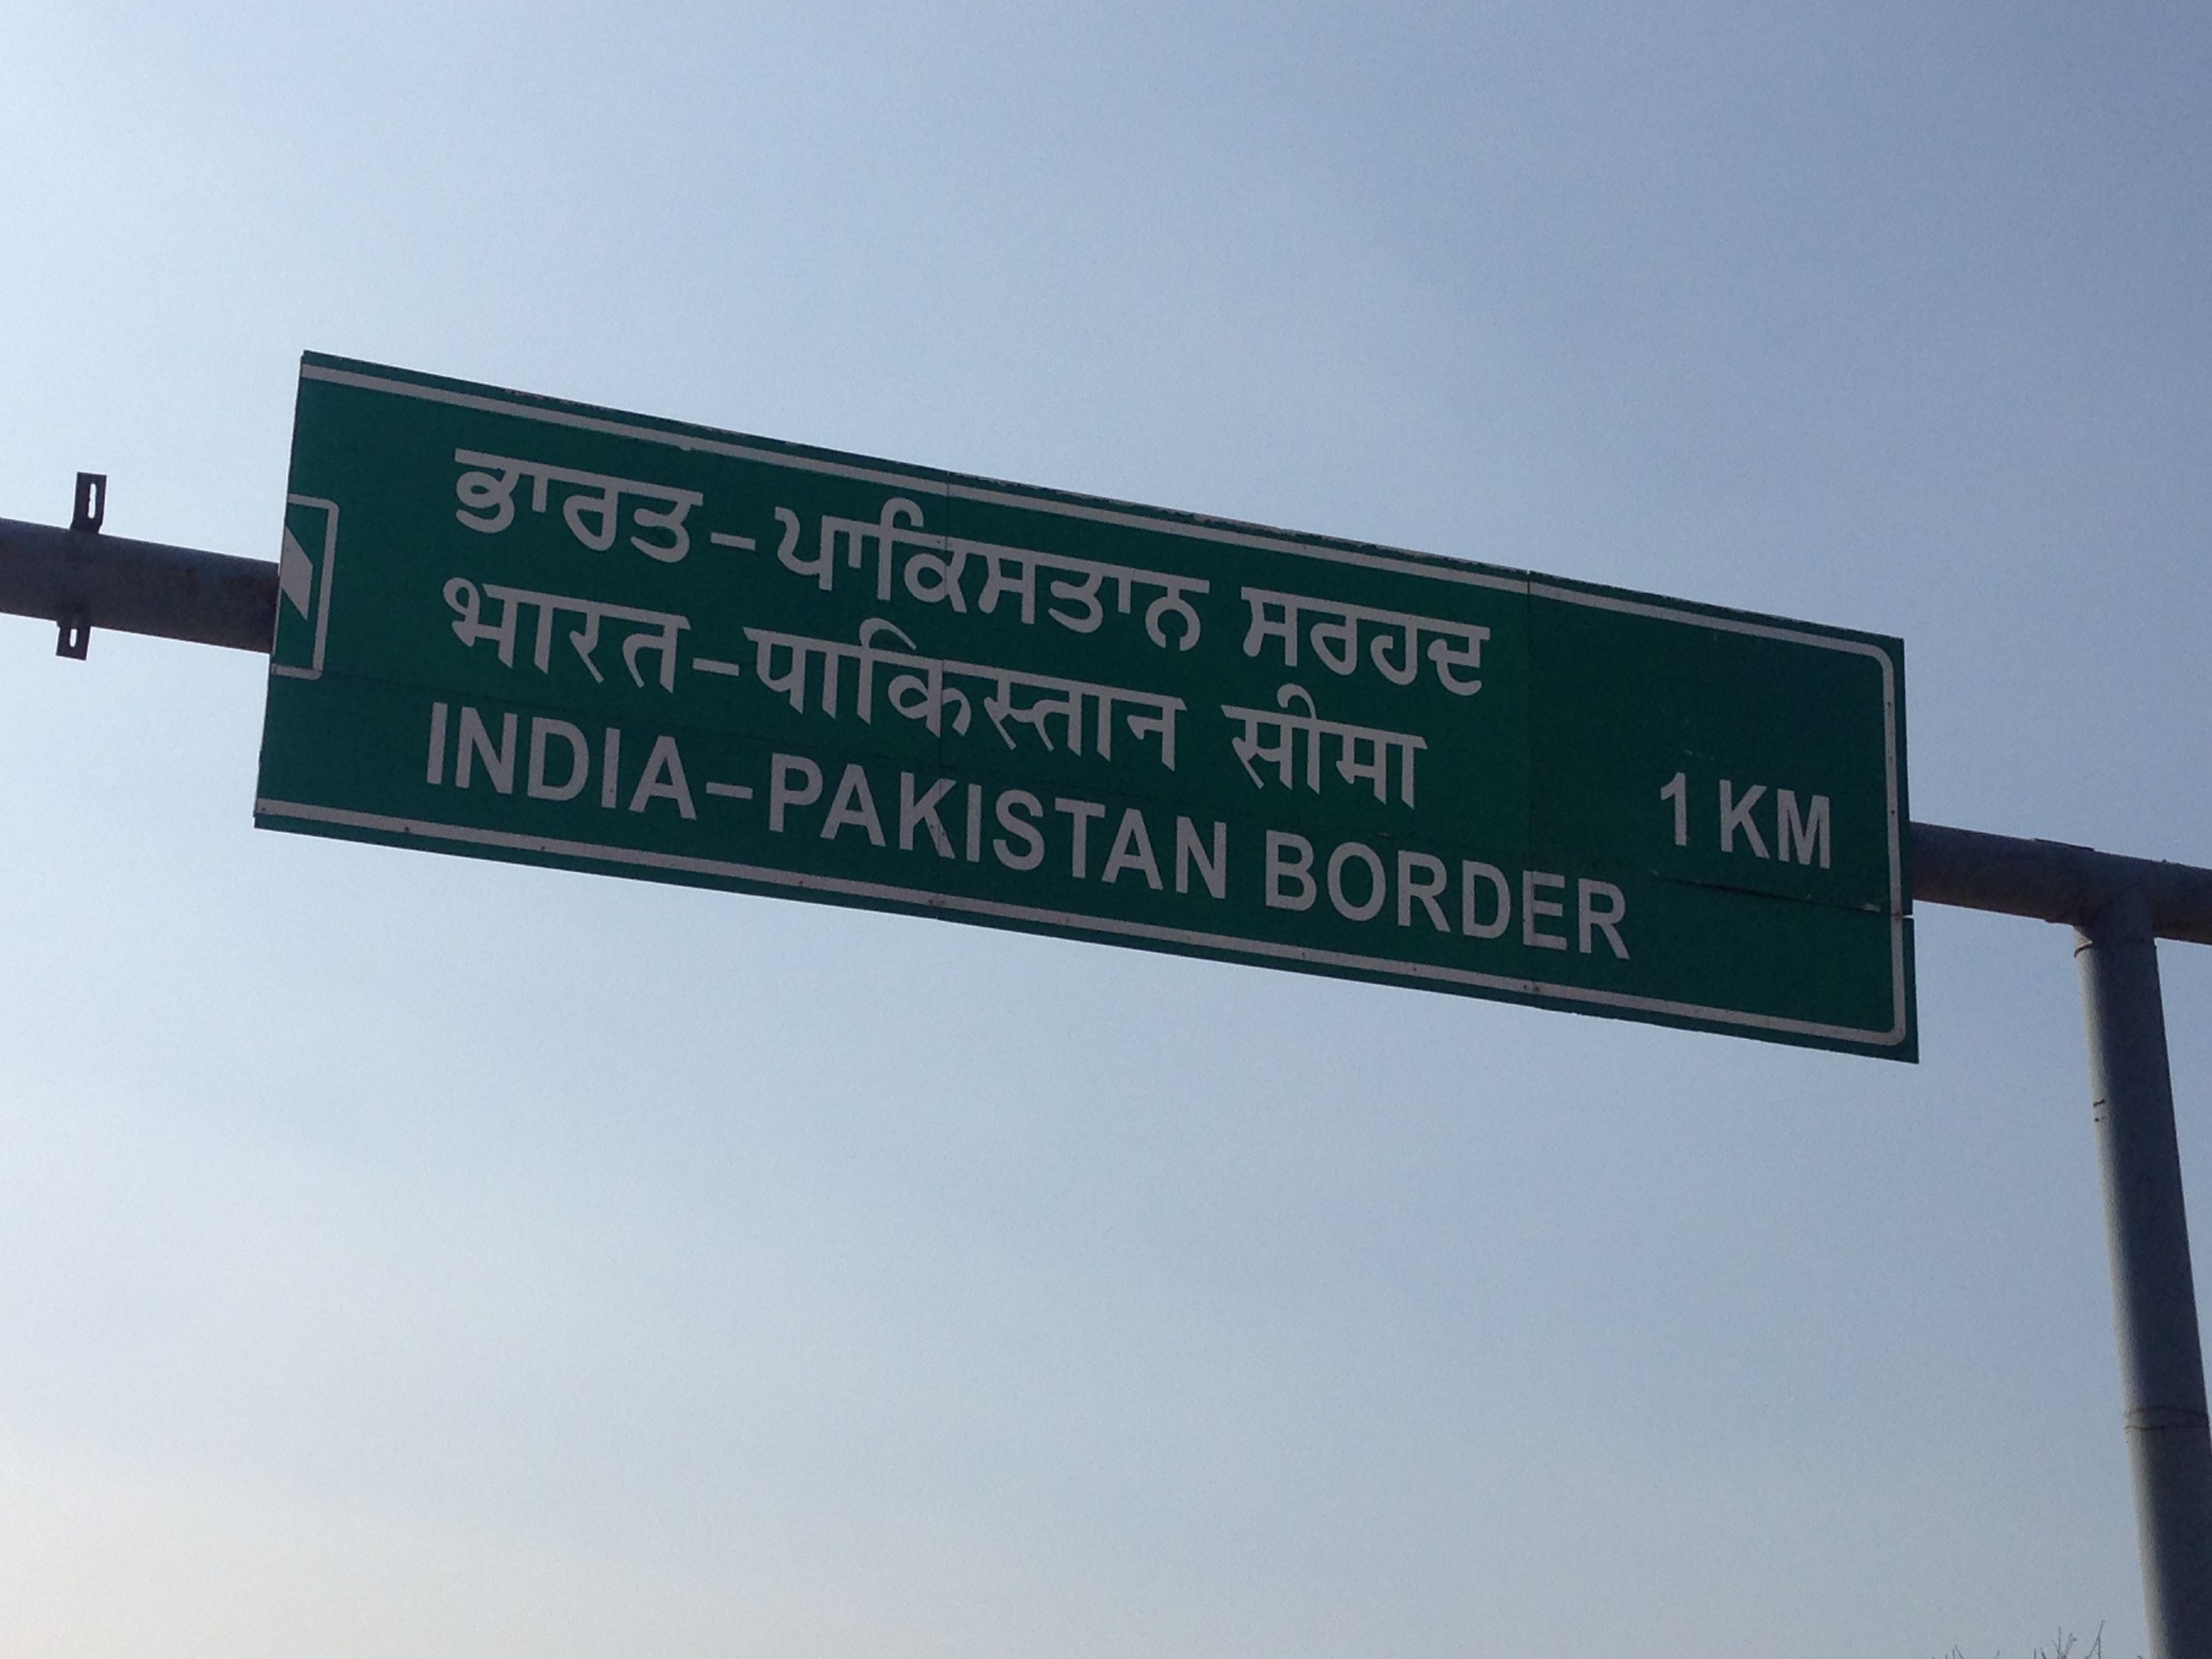 India - Pakistan border near Amritsar